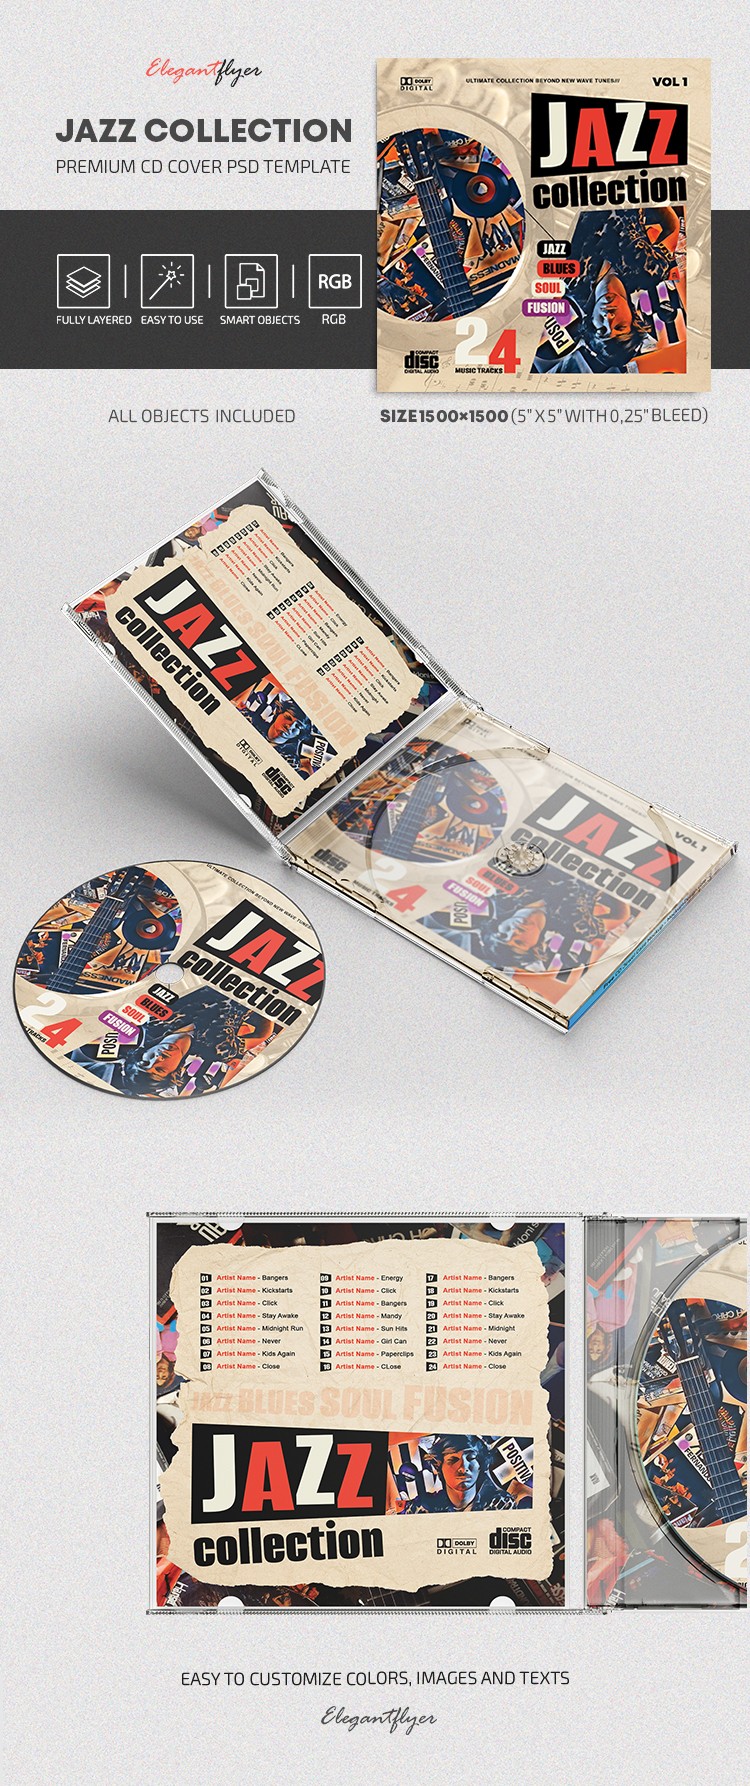 Copertina del CD della collezione Jazz. by ElegantFlyer